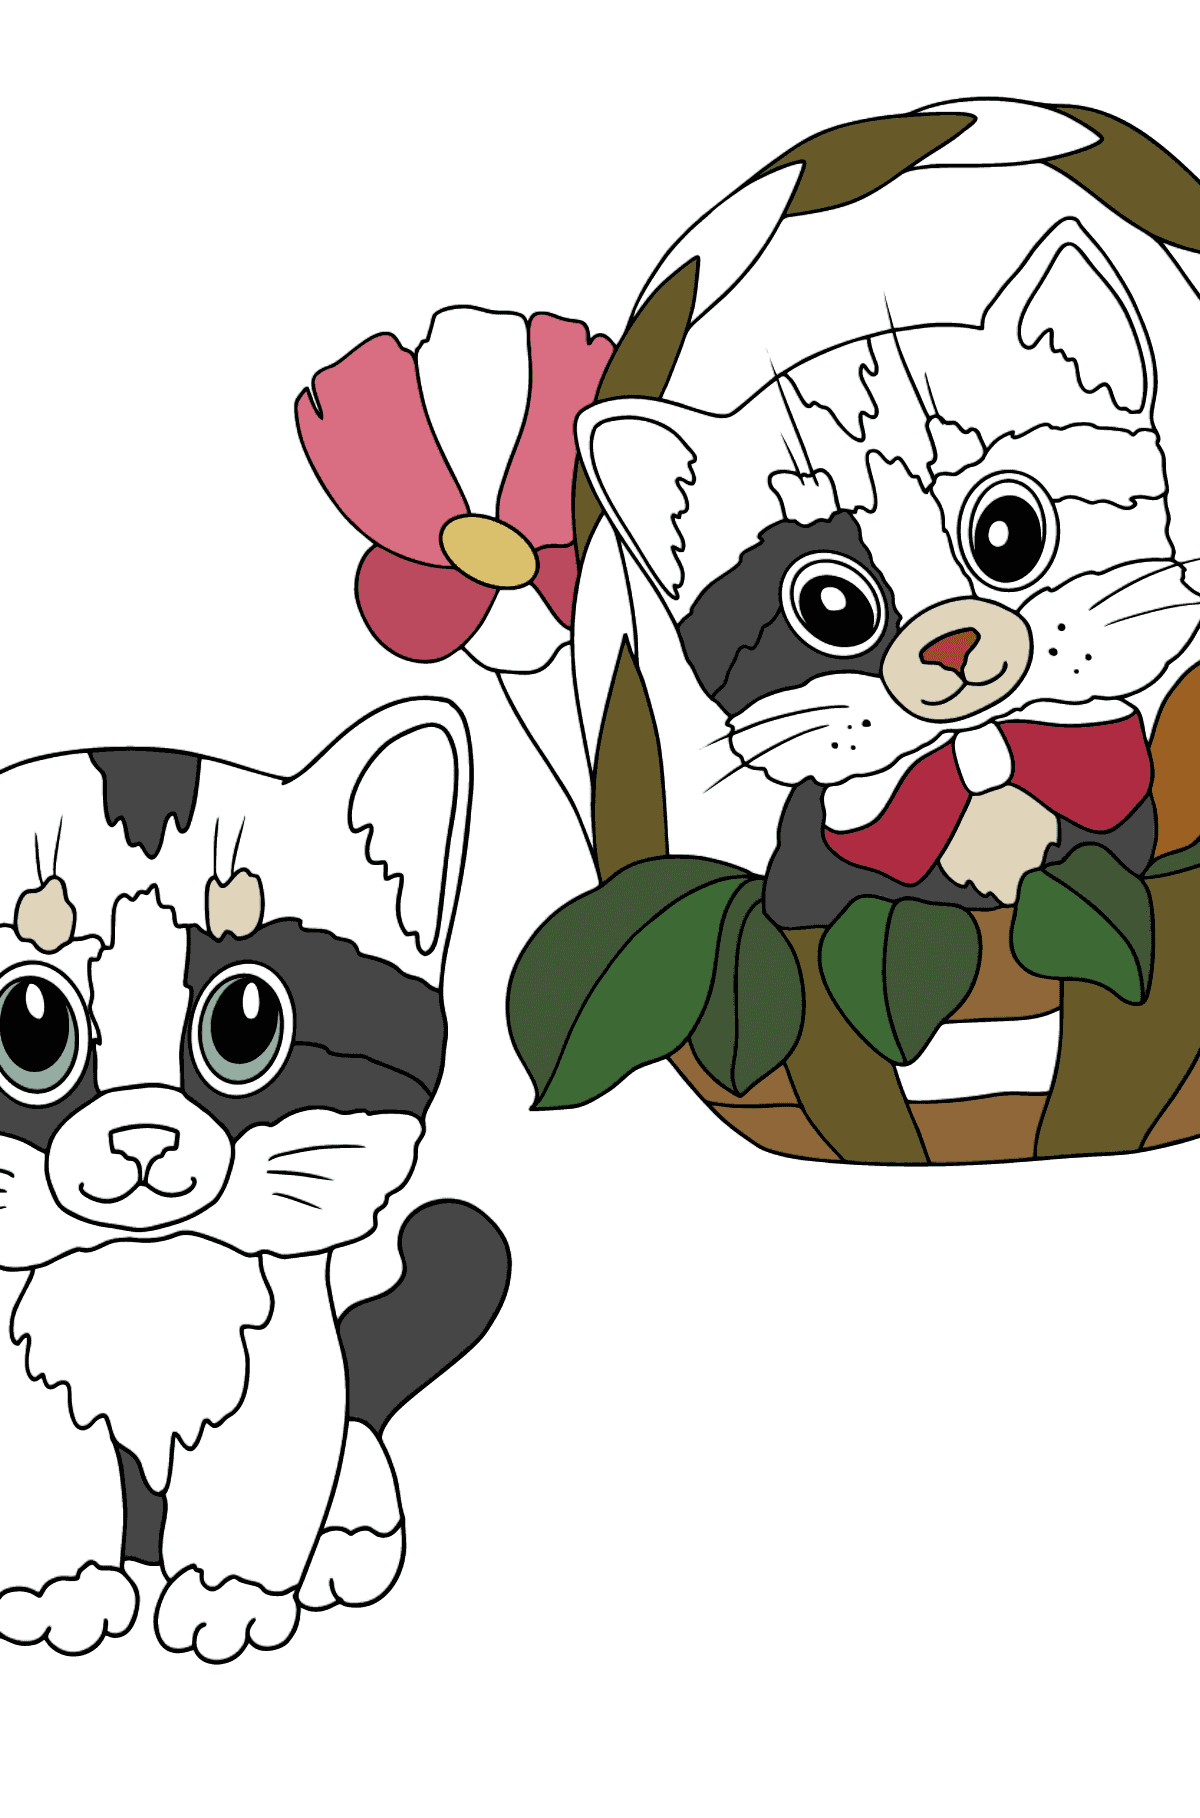 Disegno da colorare di gattini carini - Disegni da colorare per bambini